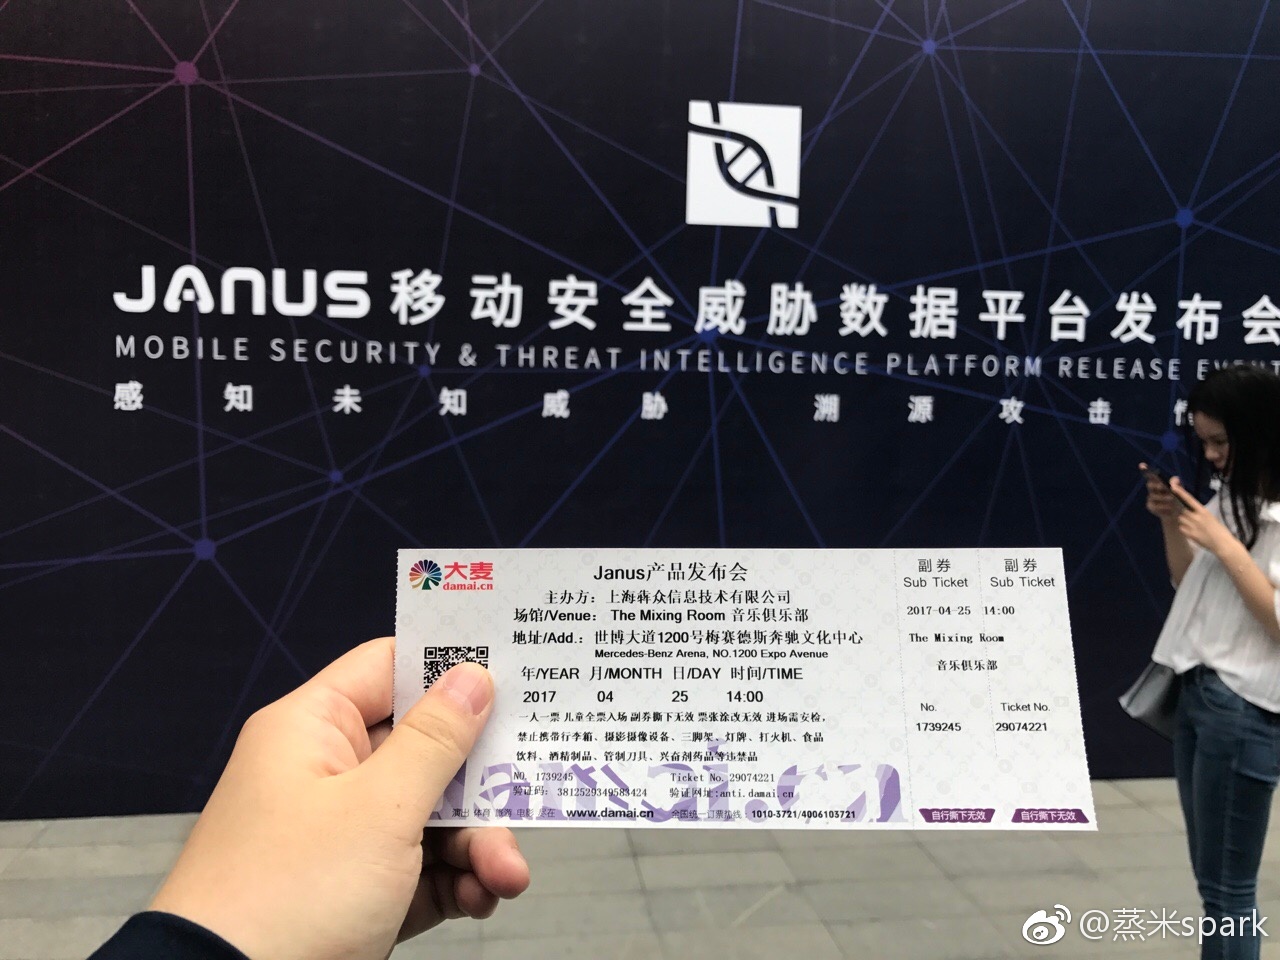 Ticket für die Janus Konferenz in Shanghai